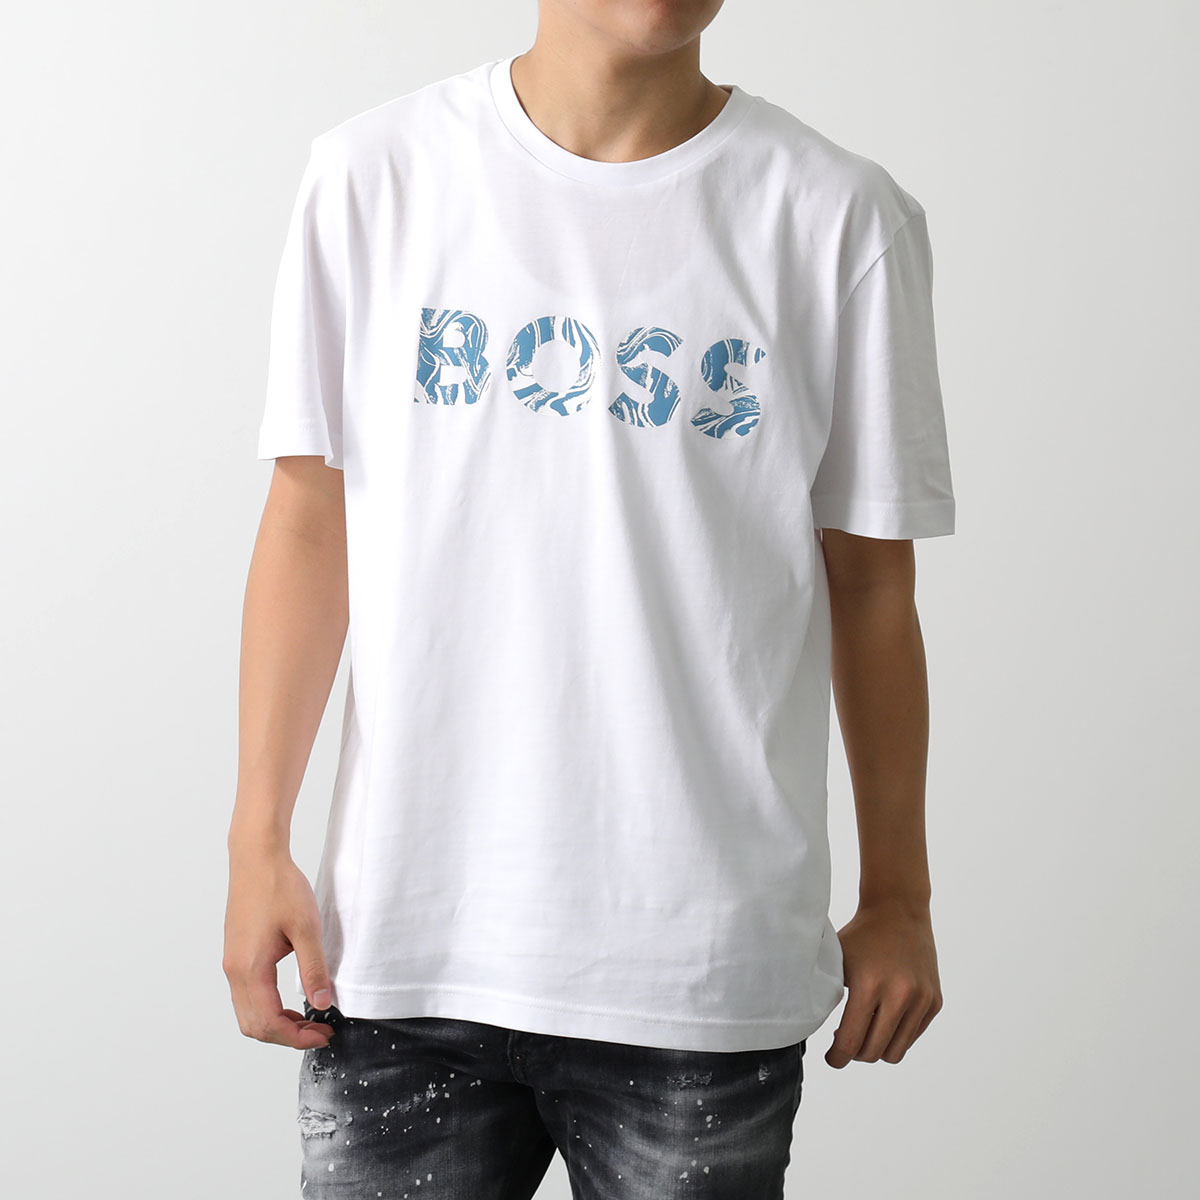 HUGO BOSS ヒューゴボス Tシャツ 50515997 メンズ 半袖 クルーネック カットソー...